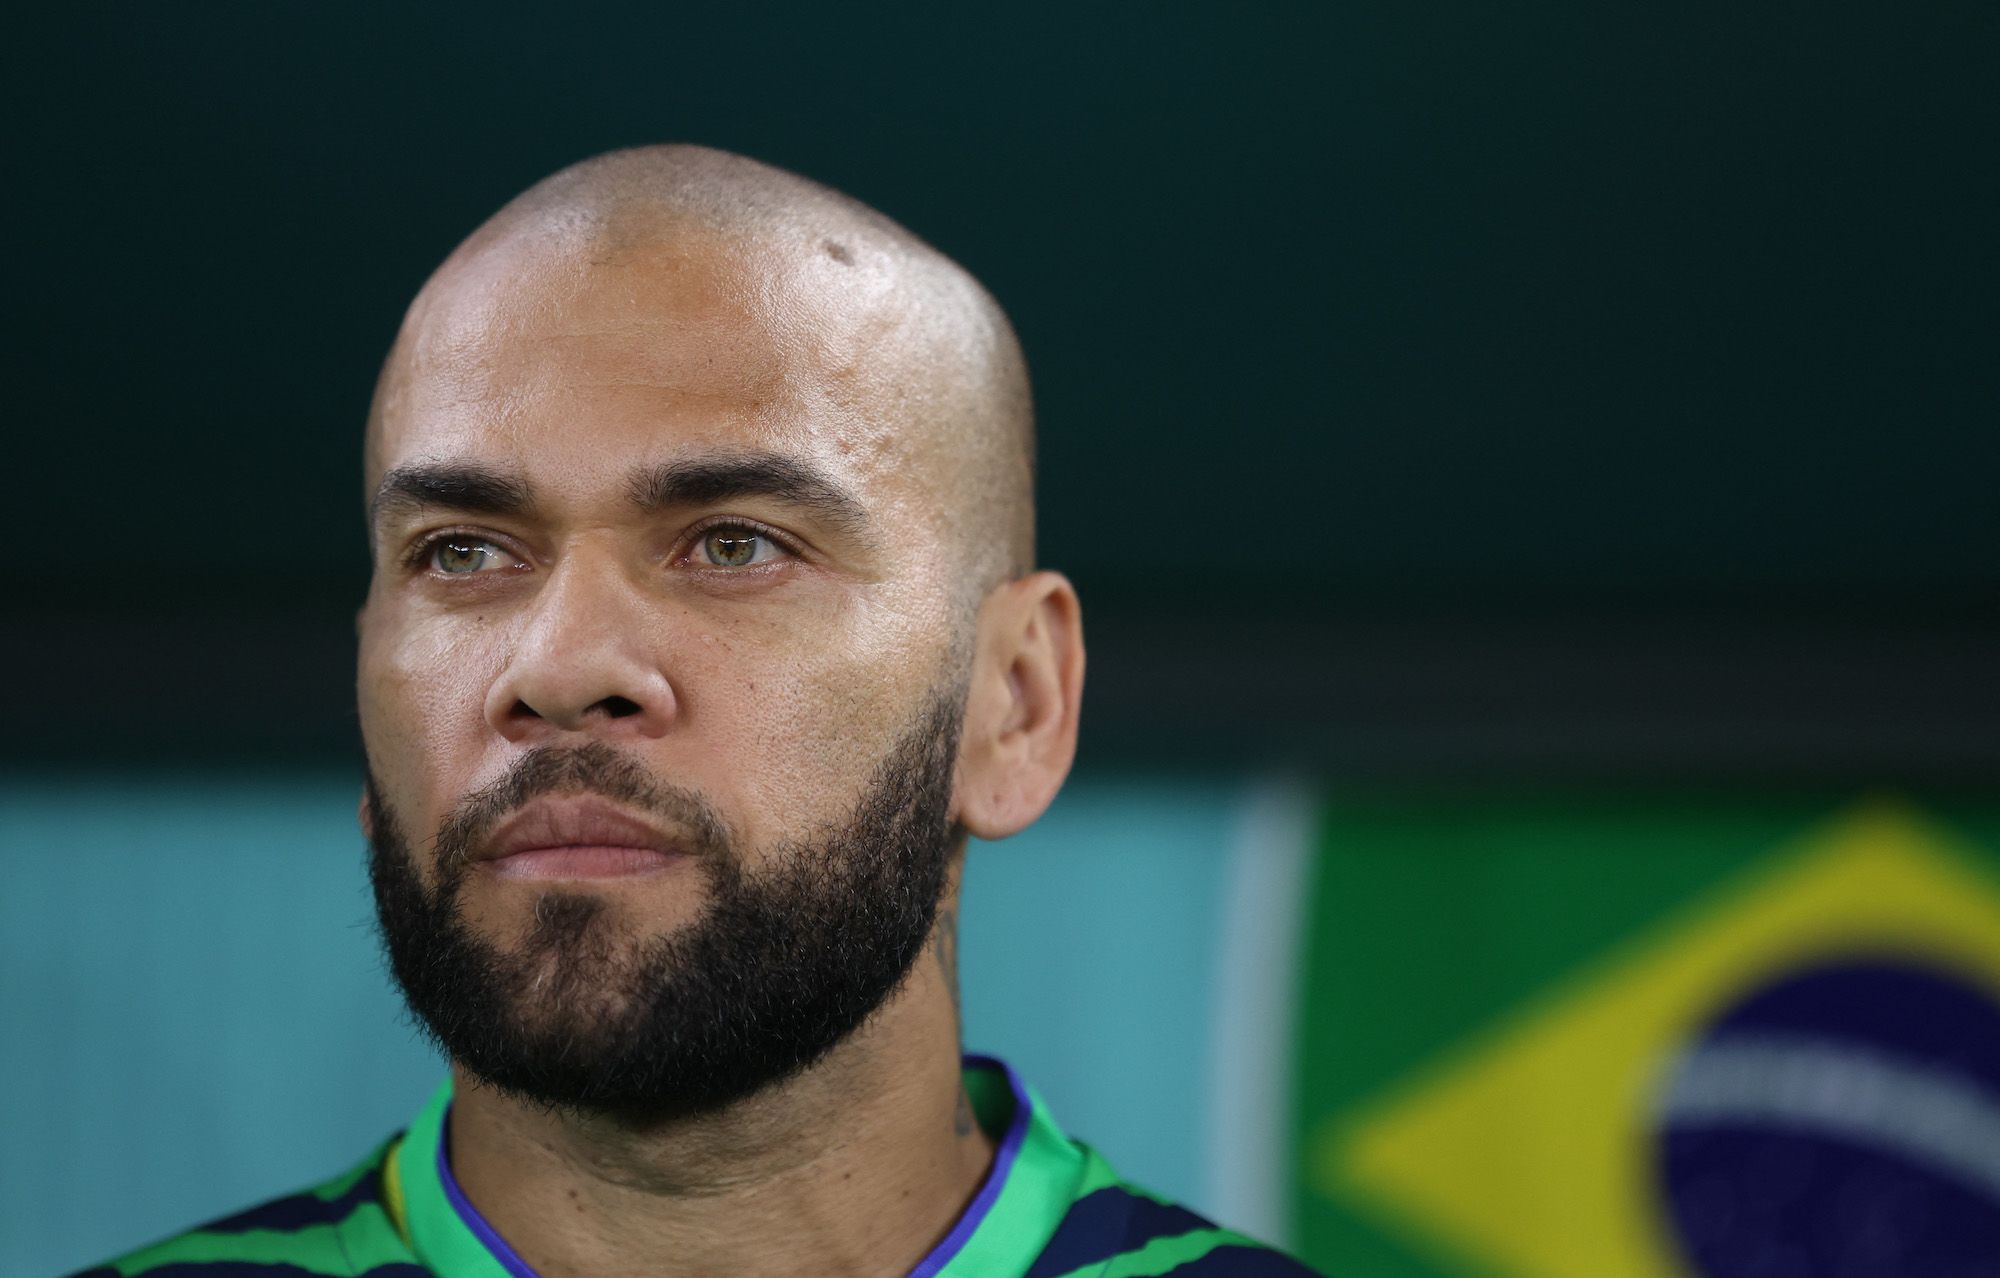 Dani Alves’ “Coutinho” cellmate has ties to former Barcelona legend Ronaldinho